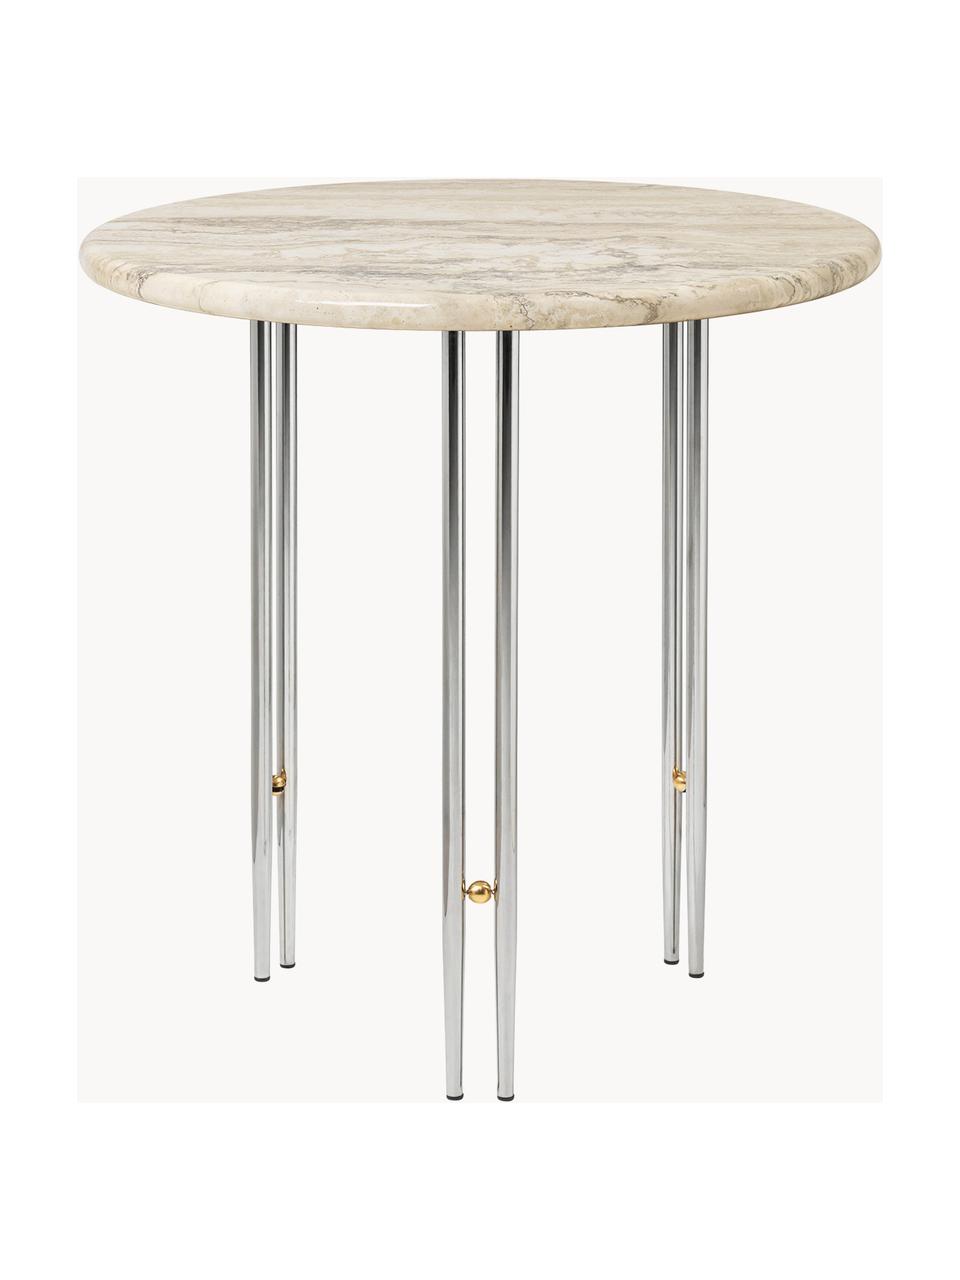 Runder Marmor-Beistelltisch IOI, Tischplatte: Marmor, Gestell: Stahl, lackiert, Dekor: Messing, Beige marmoriert, Silberfarben, Ø 50 x H 50 cm